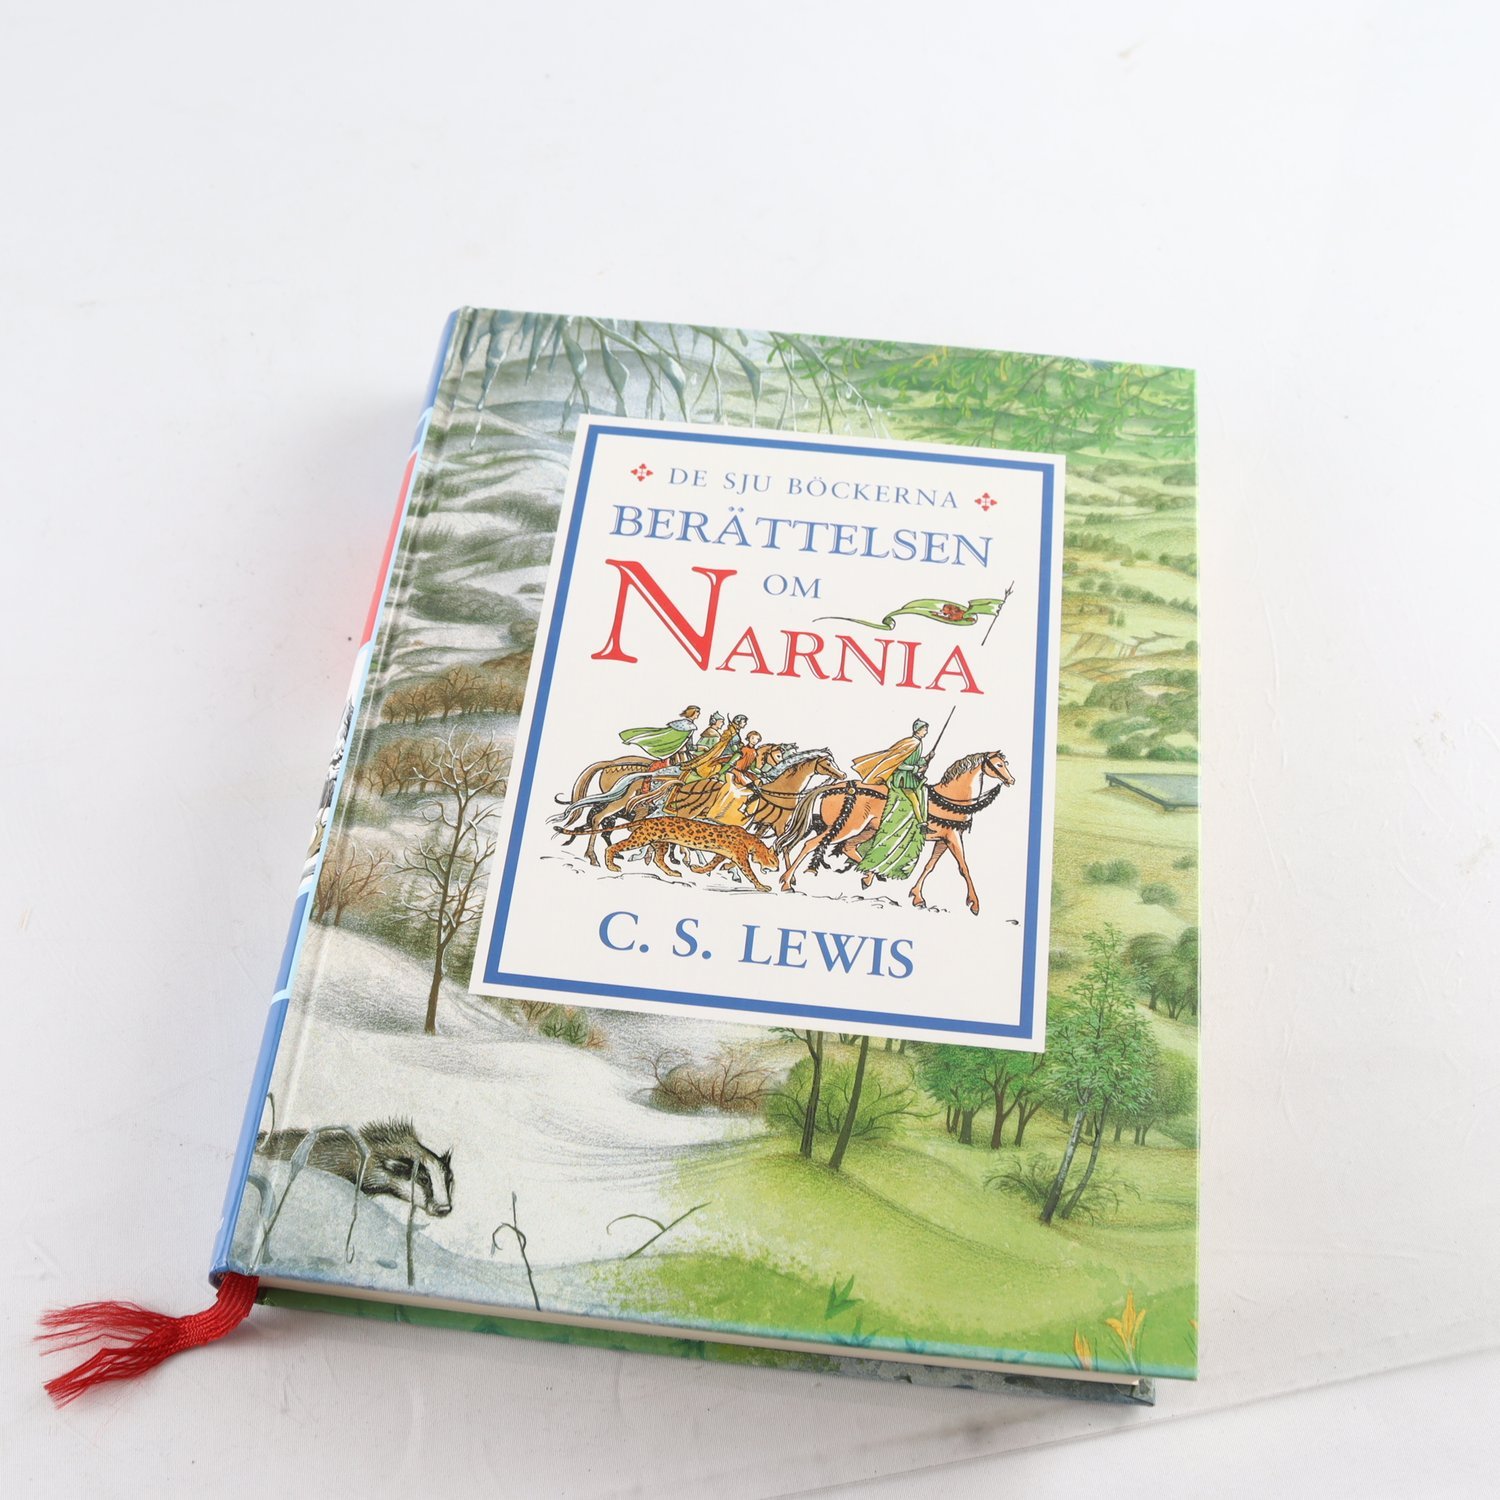 C.S. Lewis, De sju böckerna, Berättelsen om Narnia